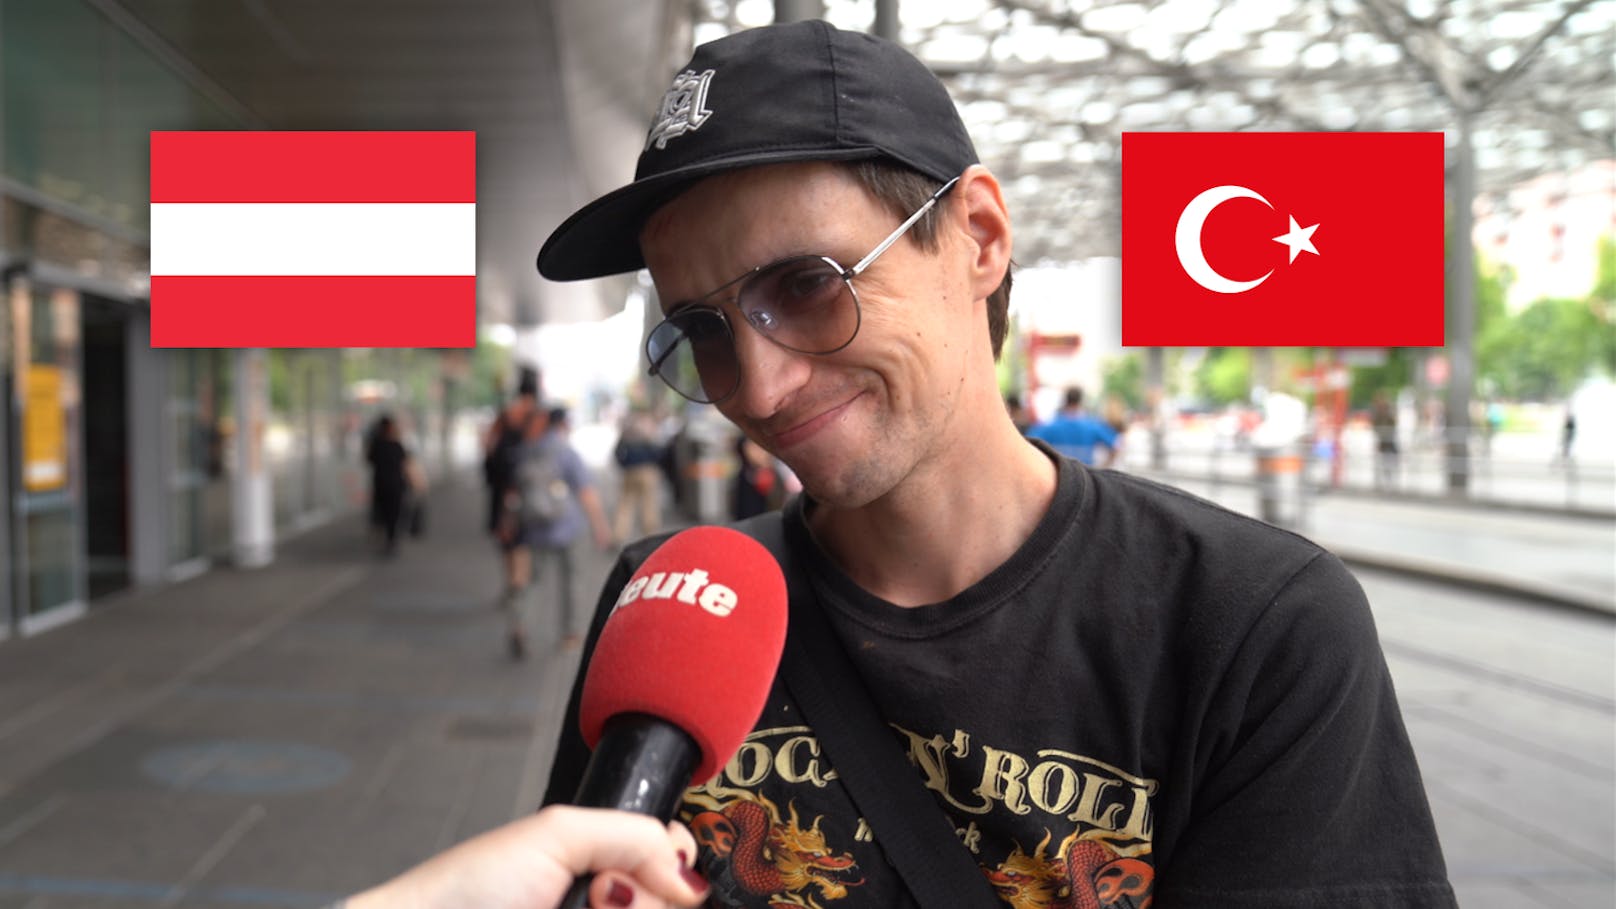 "Geheimfavorit: Österreich gewinnt die EM!"